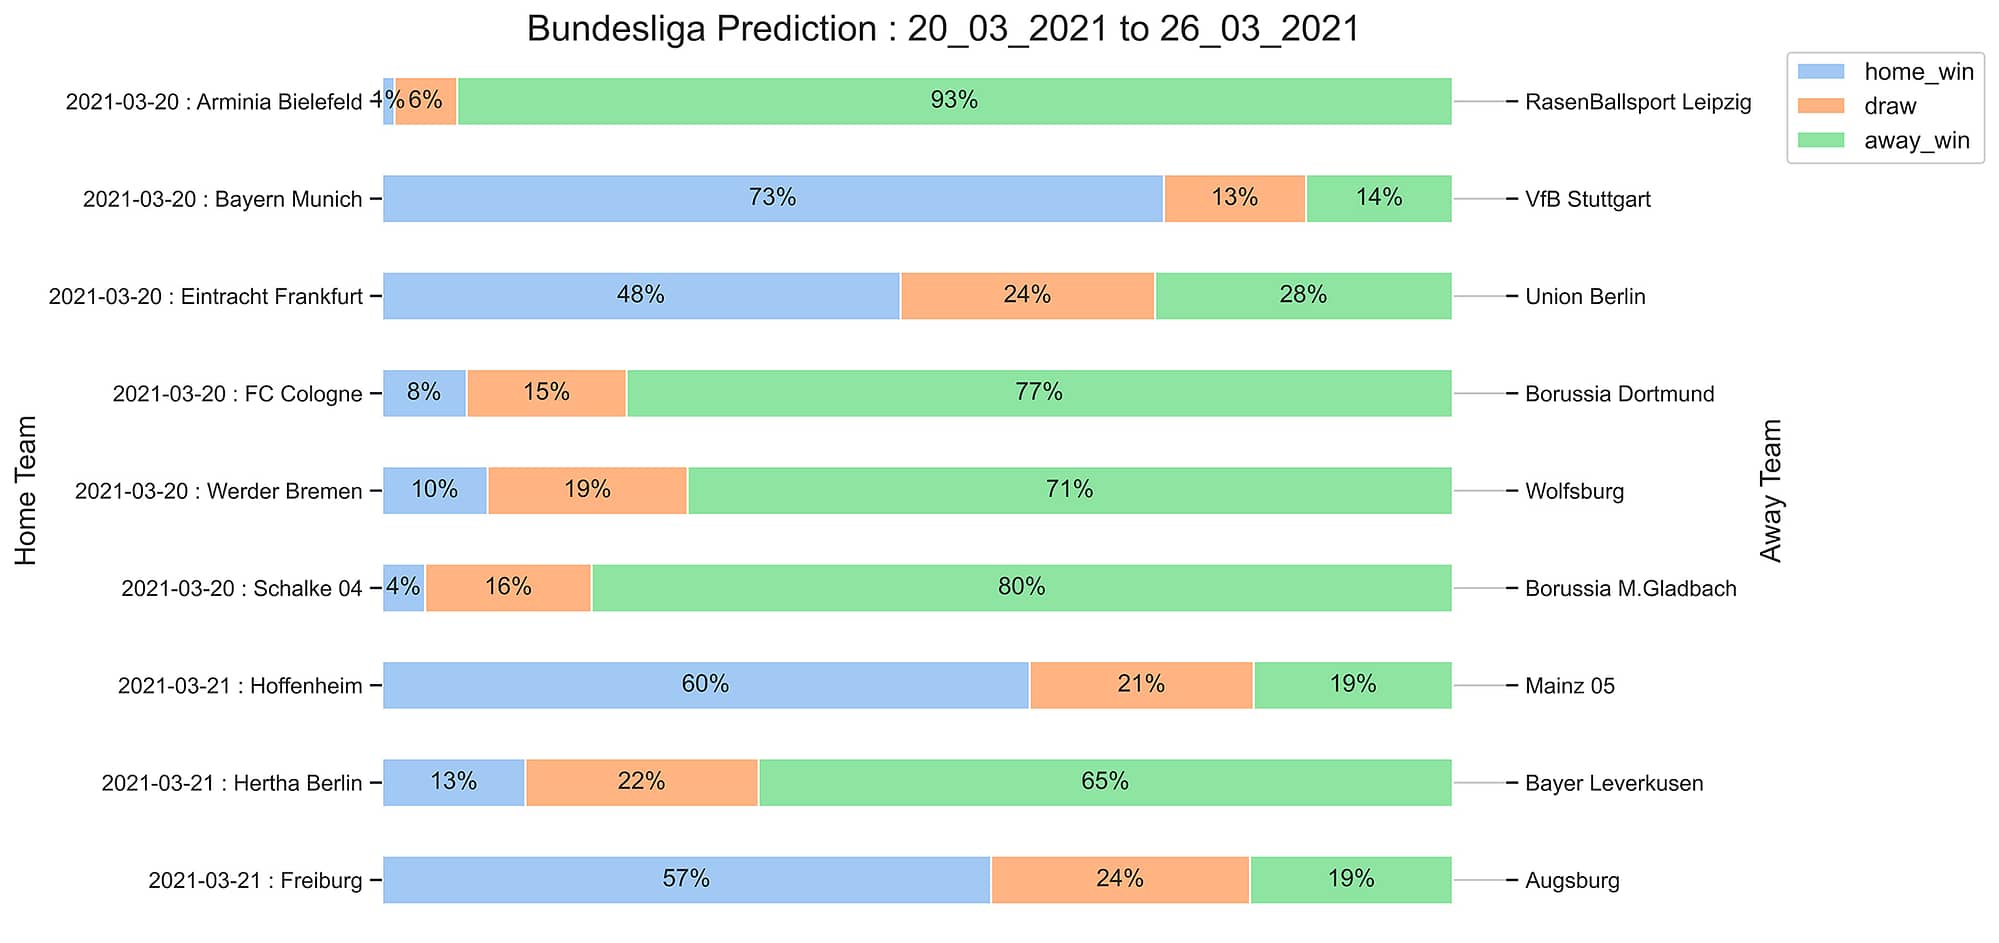 Bundesliga_Prediction 20_03_2021